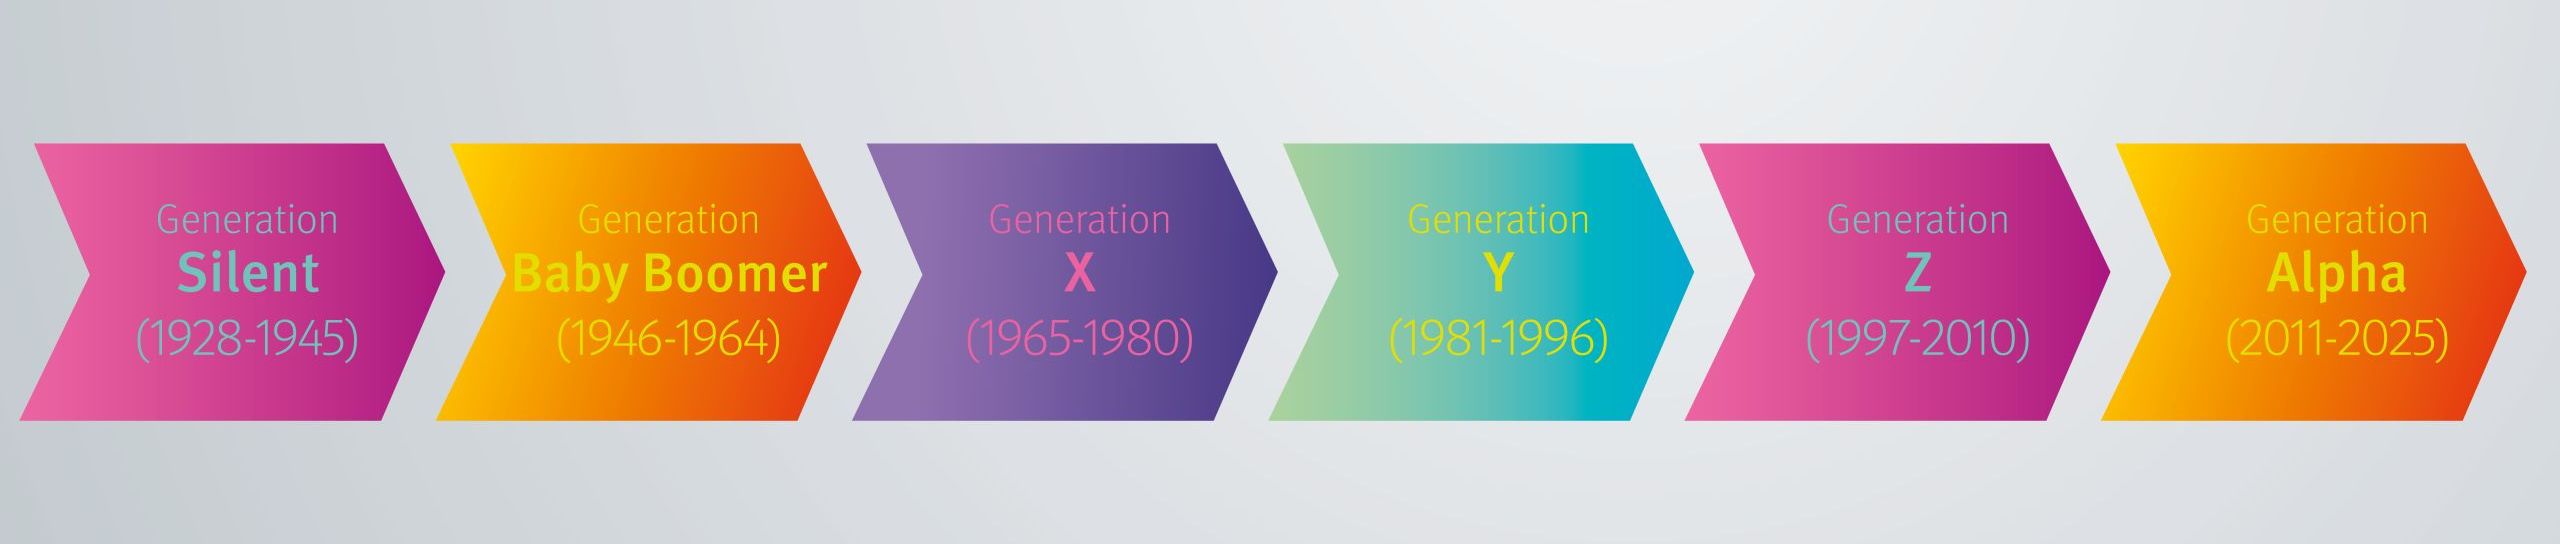 Generationen Timeline von Wir lieben Werbung